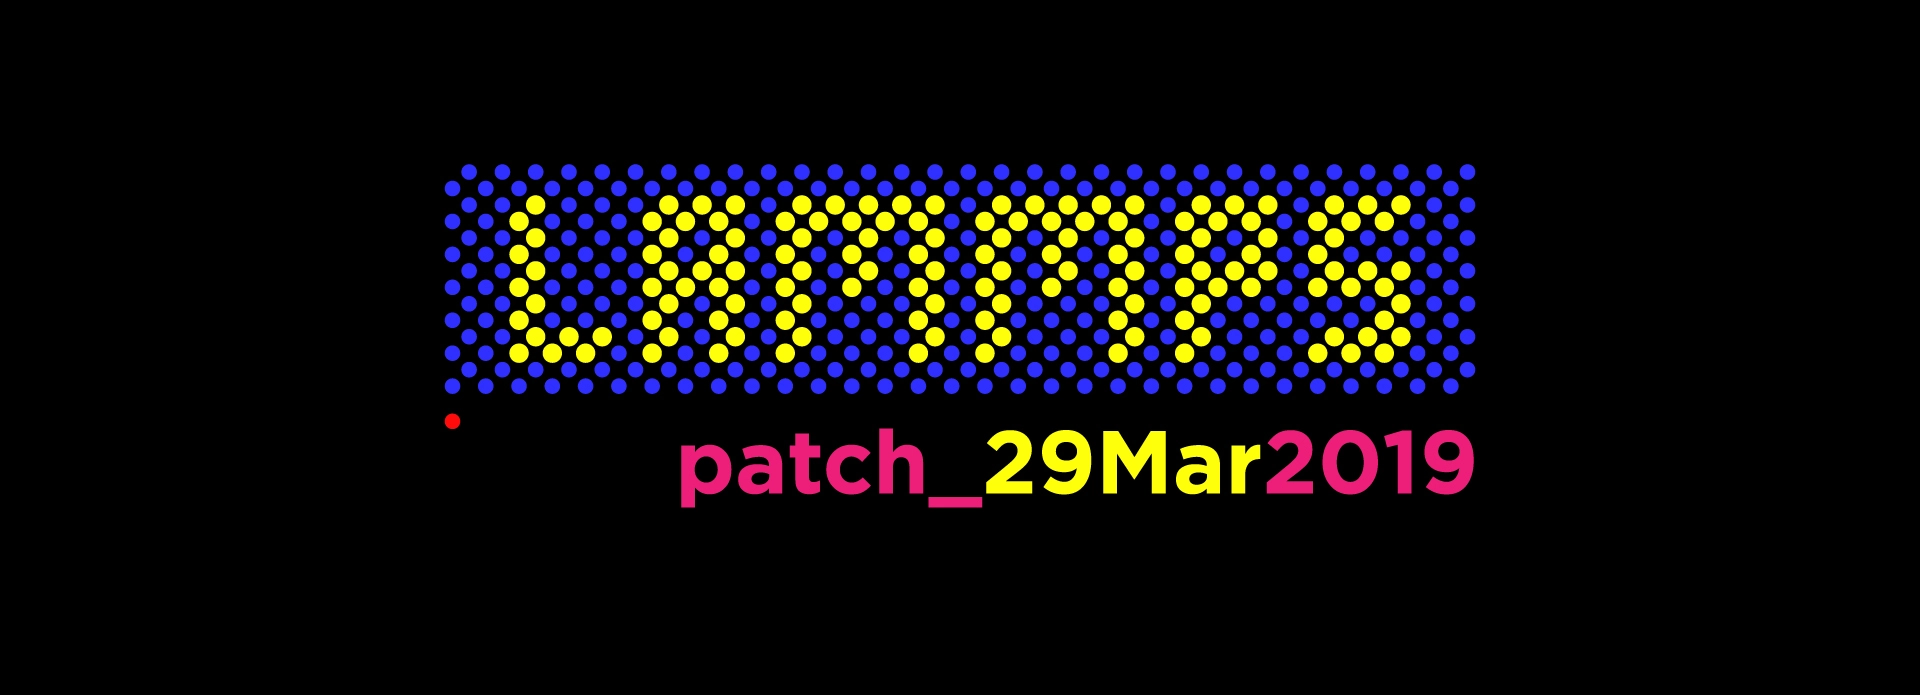 LAMMPS-patch-Mar29_2019_(1).jpg